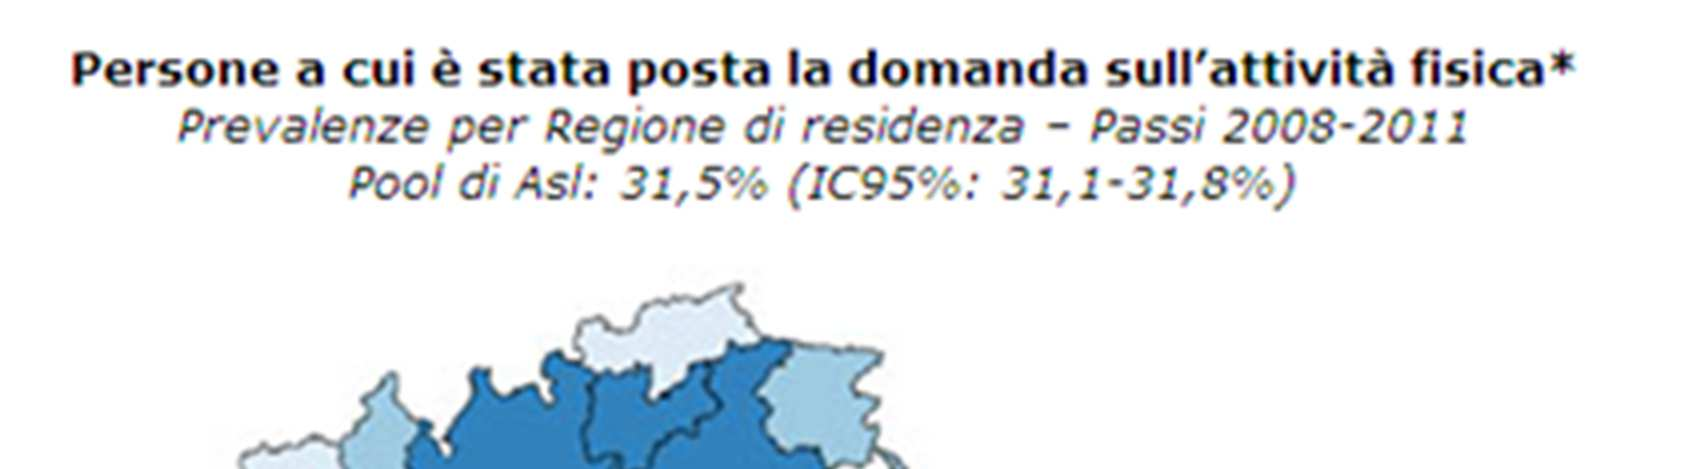 Nel 2012 la prevalenza a Brescia di persone sedentarie è del 39,5%, simile ai dati nazionali, ma circa il doppio rispetto alla stima Istat per la Lombardia (20,6%).